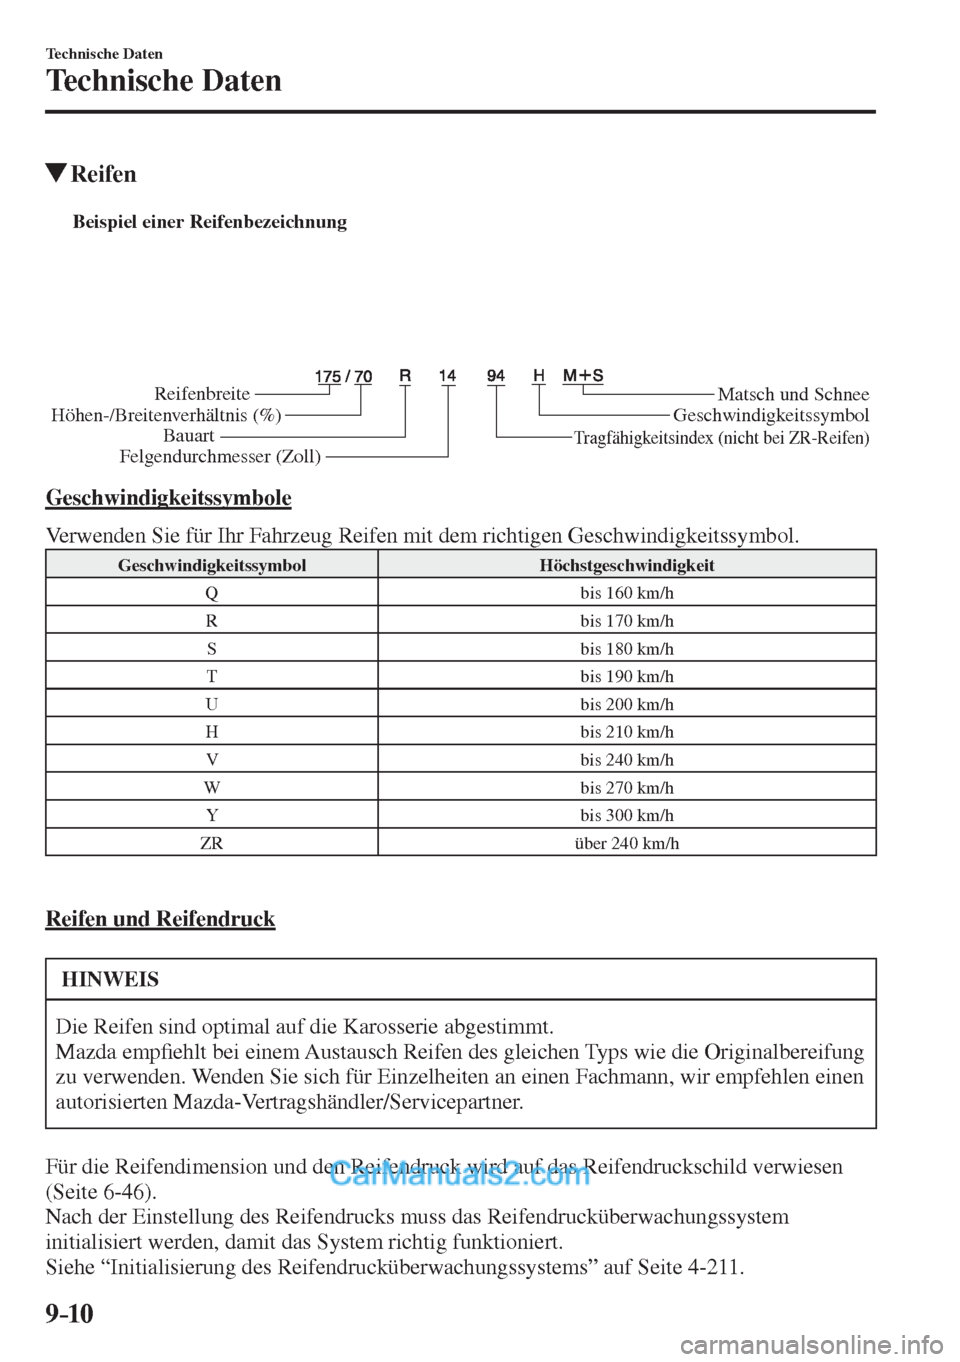 MAZDA MODEL 2 2017  Betriebsanleitung (in German) 9–10
Technische Daten
Technische Daten
          Reifen
           
Beispiel einer Reifenbezeichnung 
Reifenbreite
Höhen-/Breitenverhältnis (%)
BauartMatsch und Schnee
Geschwindigkeitssymbol
Tragf